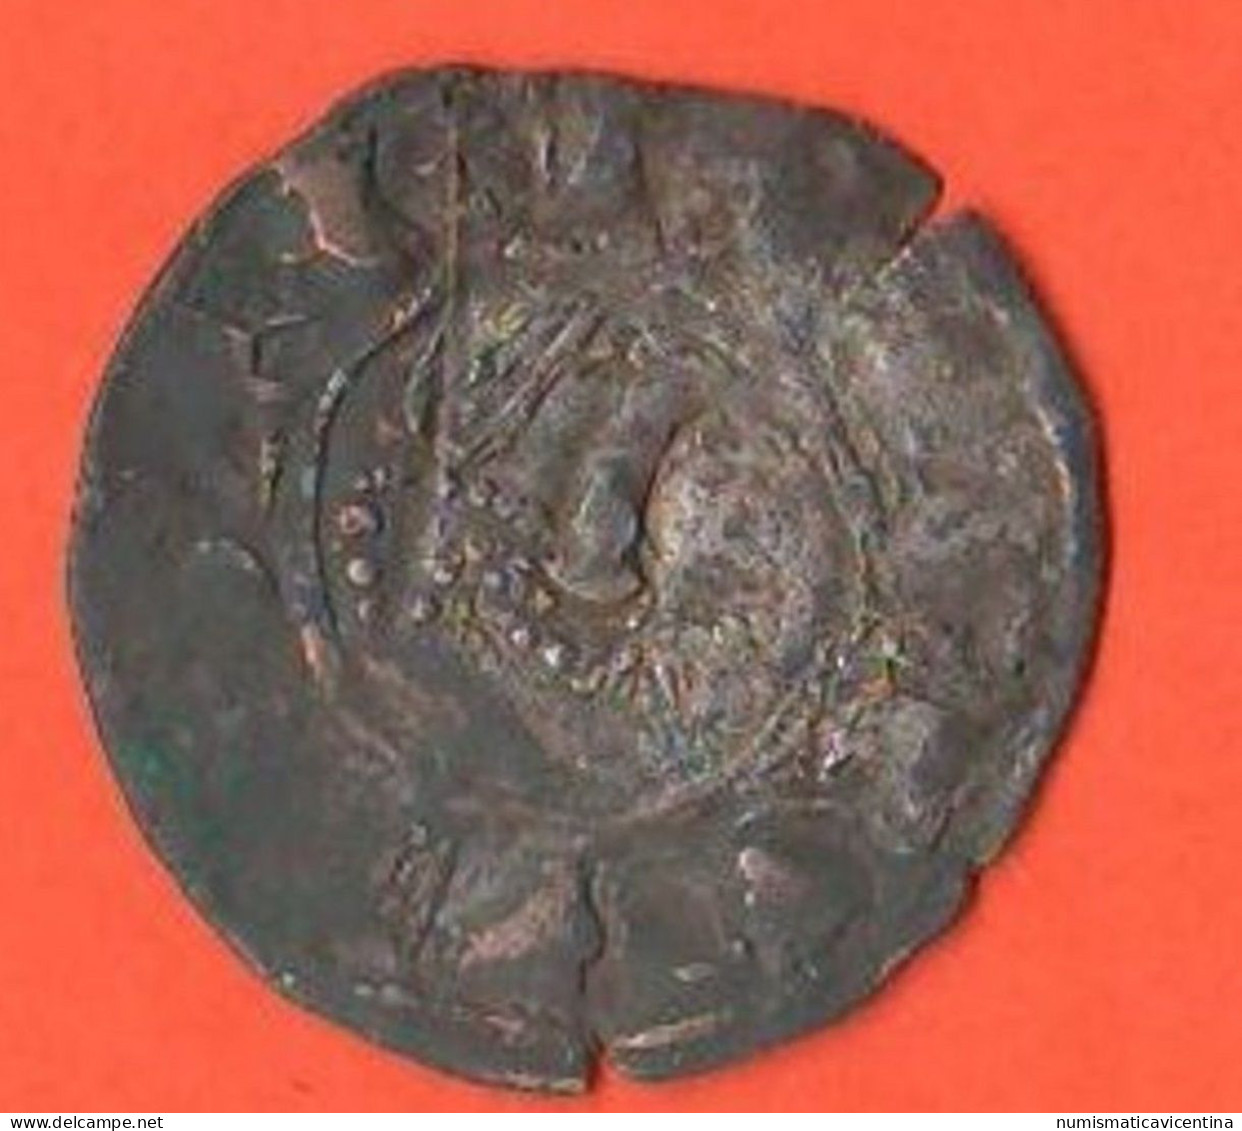 Espana UN Dinero Burgos Castilla Castiglia Spain Spagna Espagne Silver Coin - Münzen Der Provinzen